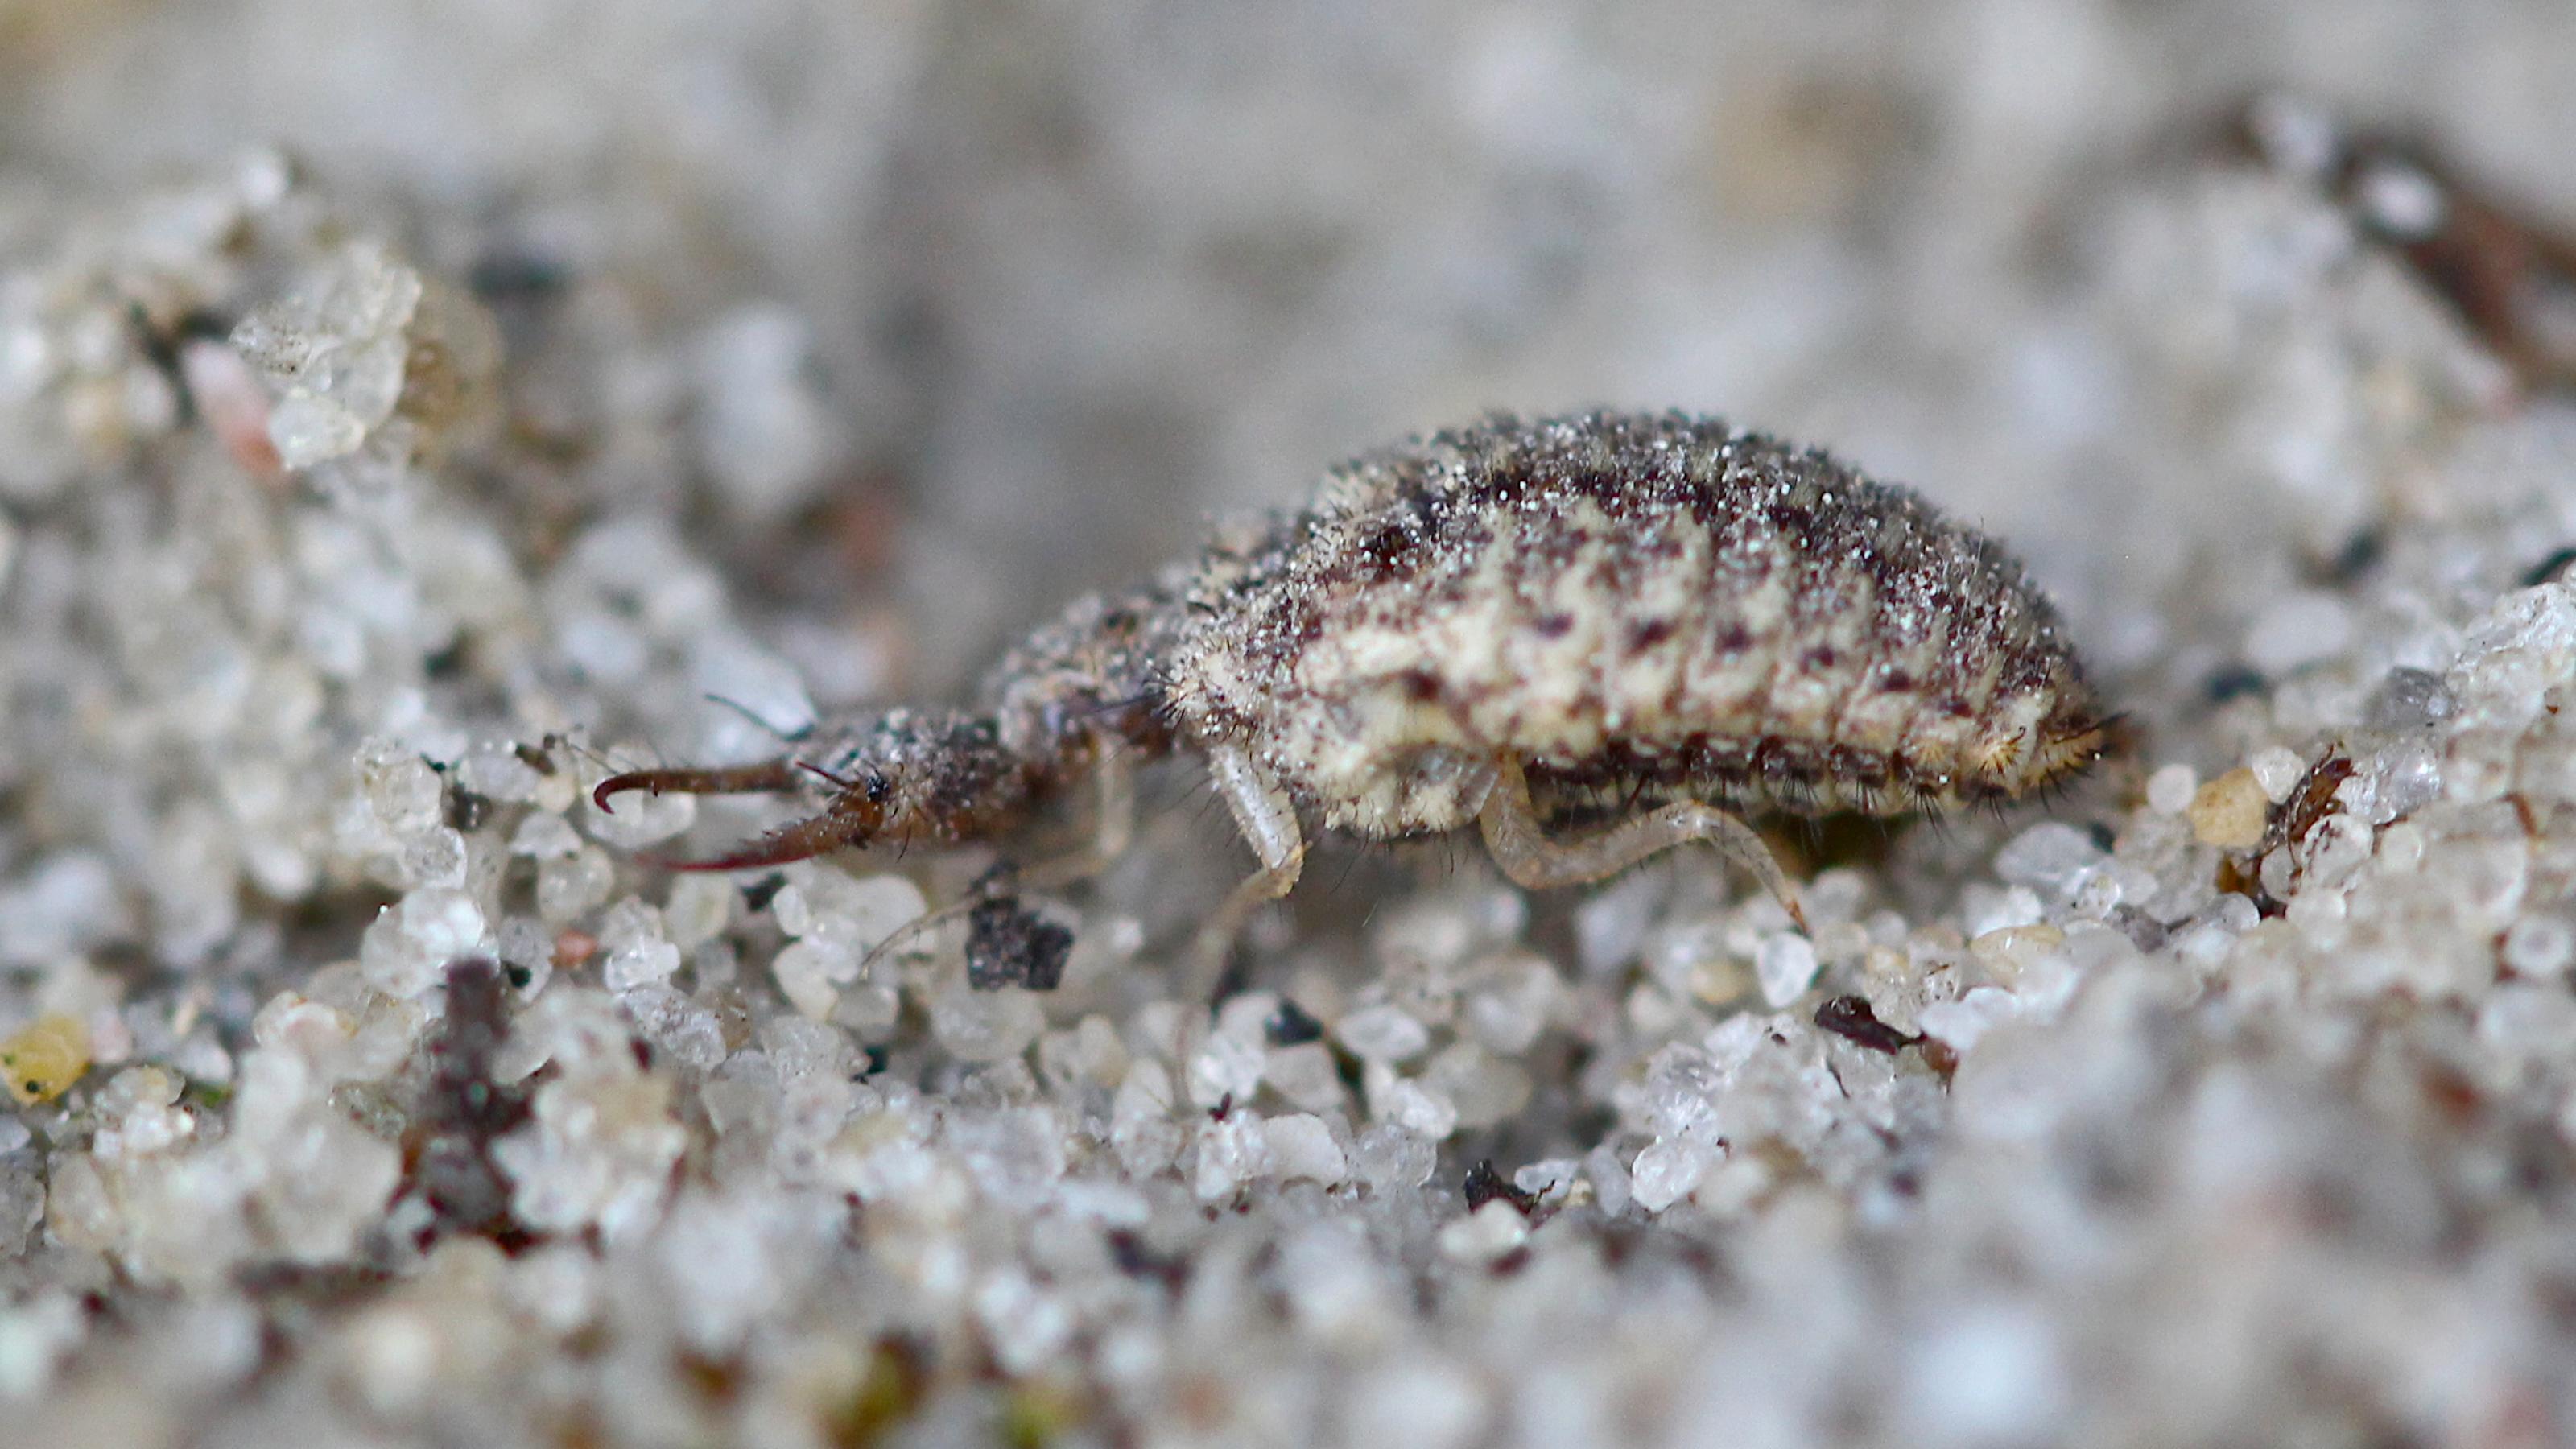 Ein braun-beige gezeichnetes Insekt mit rundlichem Hinterteil und einem kleinen, flachen Kopf mit riesigen Greifkiefern sitzt auf sandigem Untergrund.